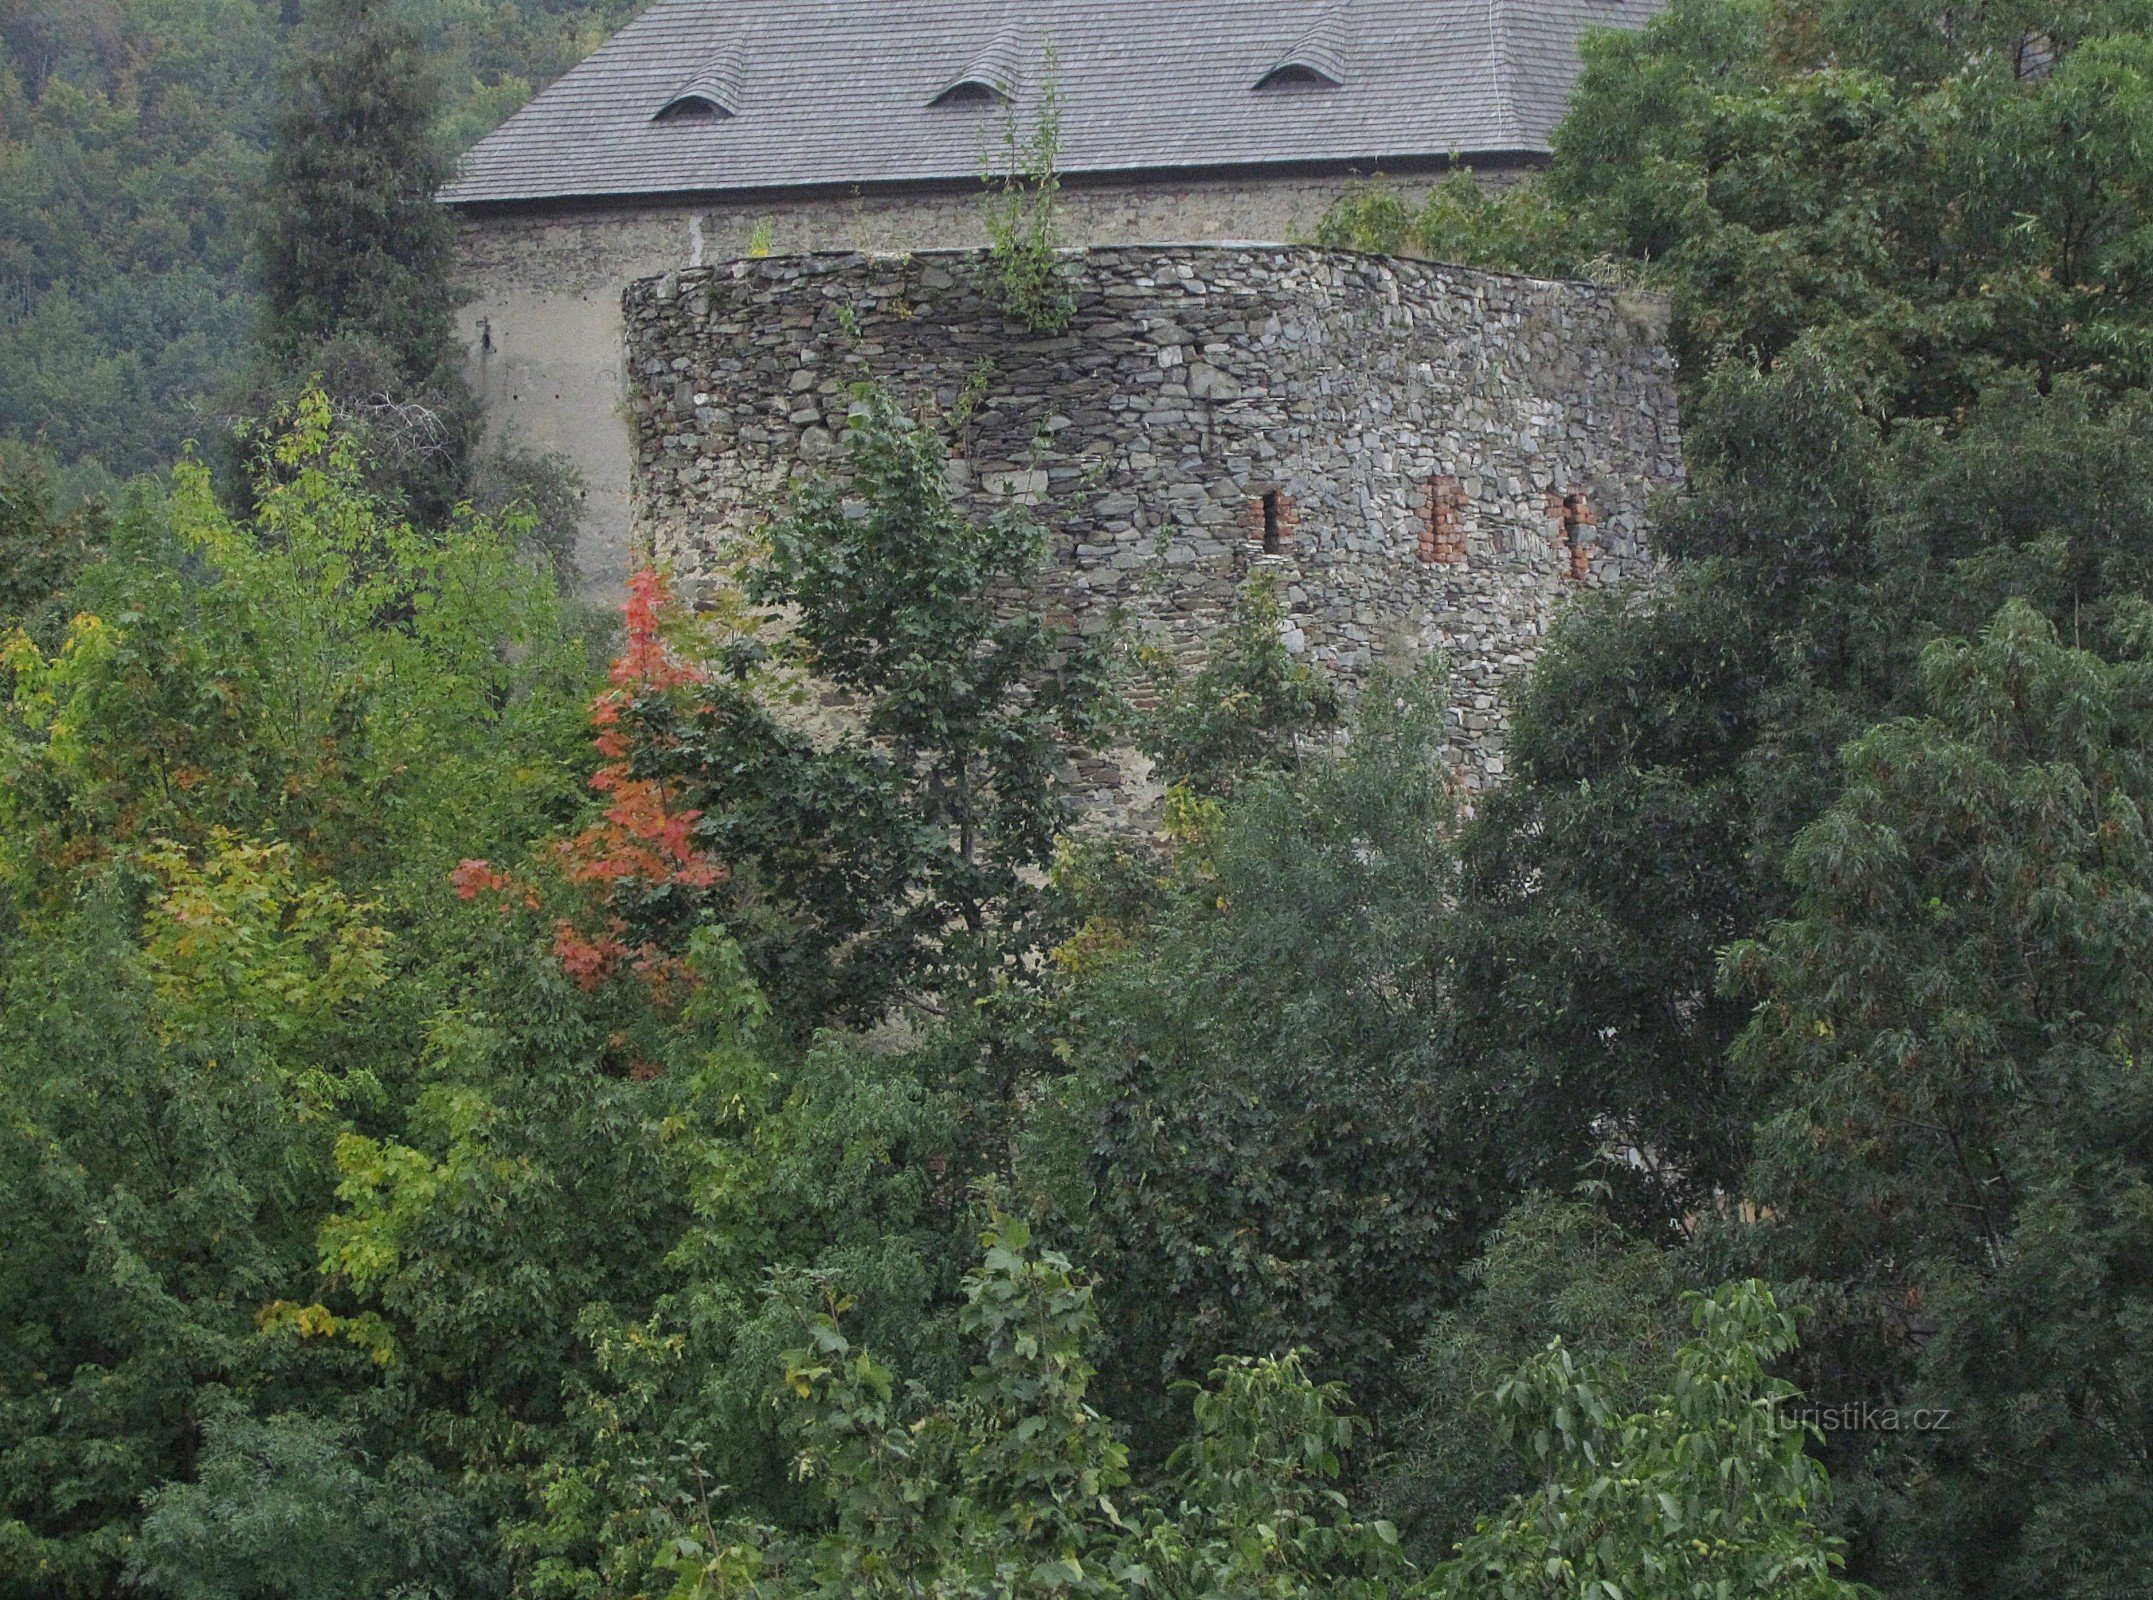 Sovinice avancerad befästning - Lichtejnštejnka tornet